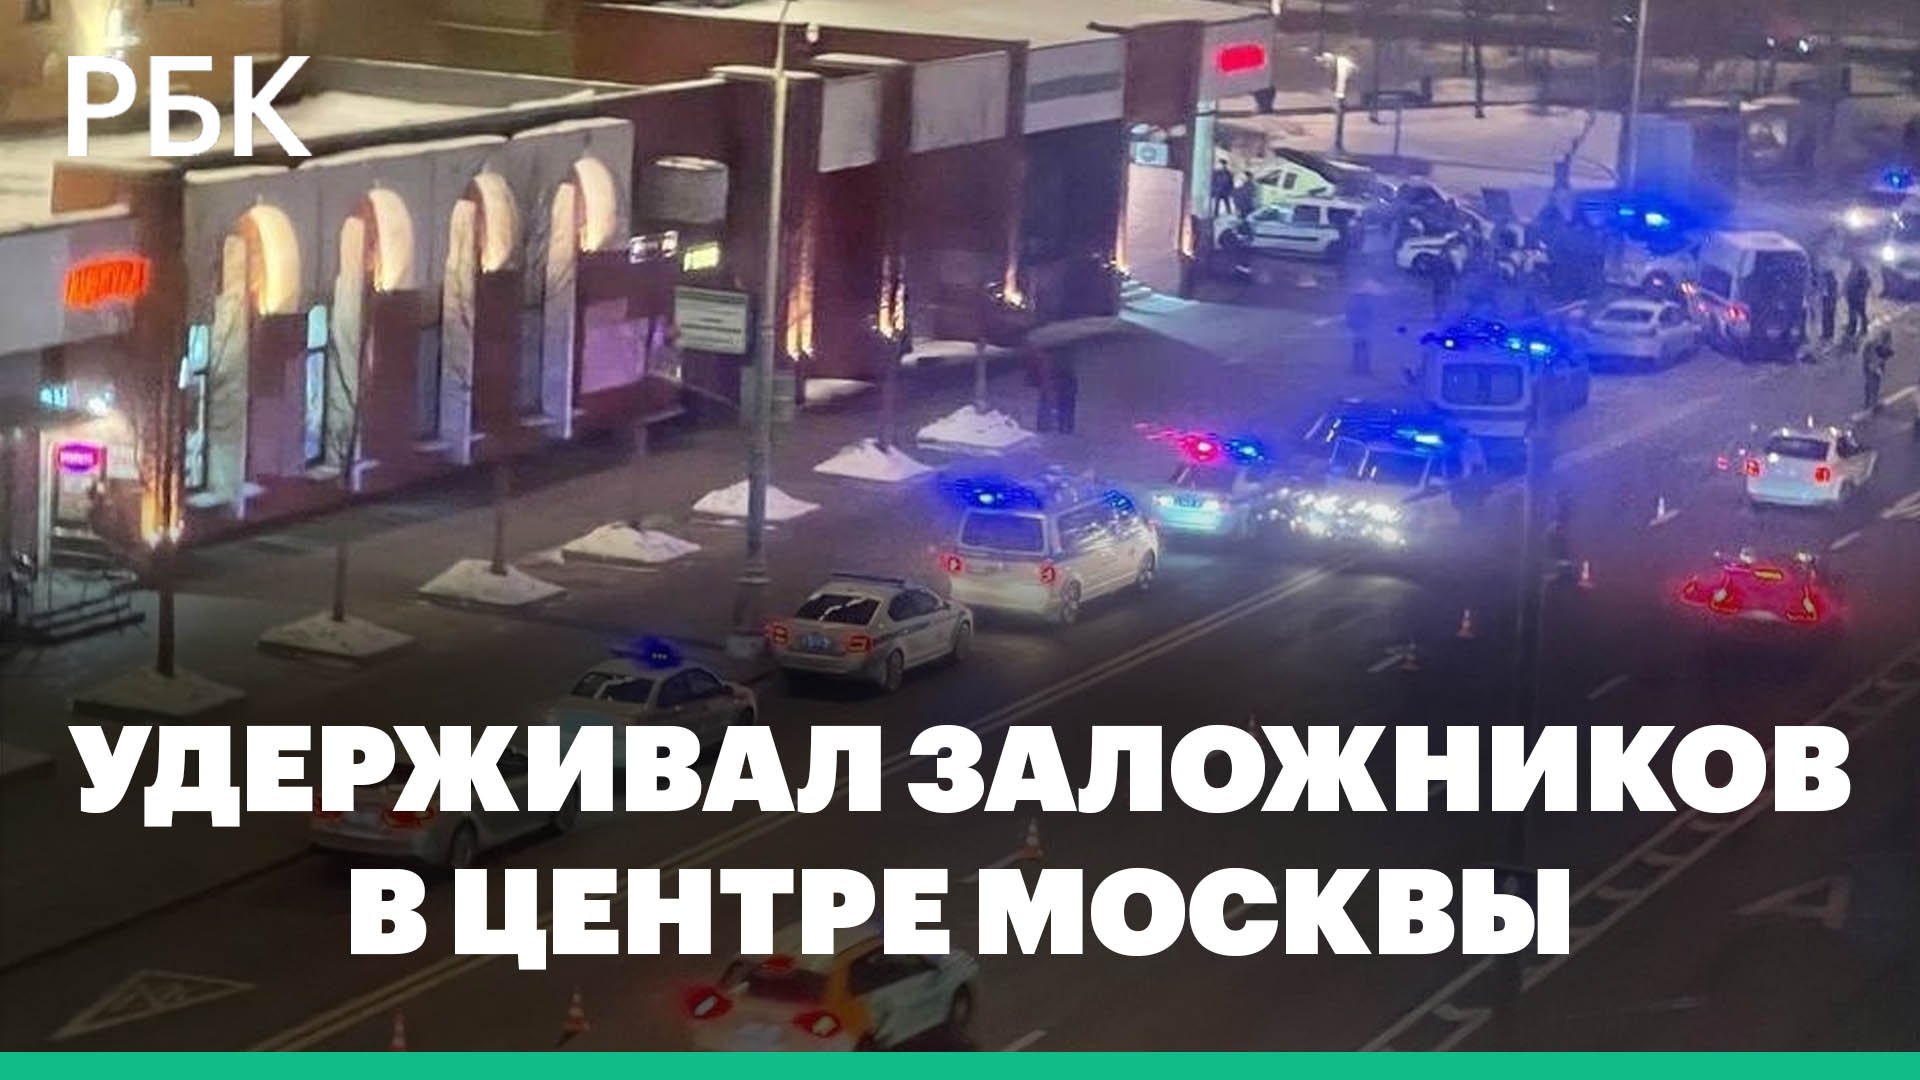 Полиция задержала мужчину, взявшего заложников в цветочном магазине в центре Москвы